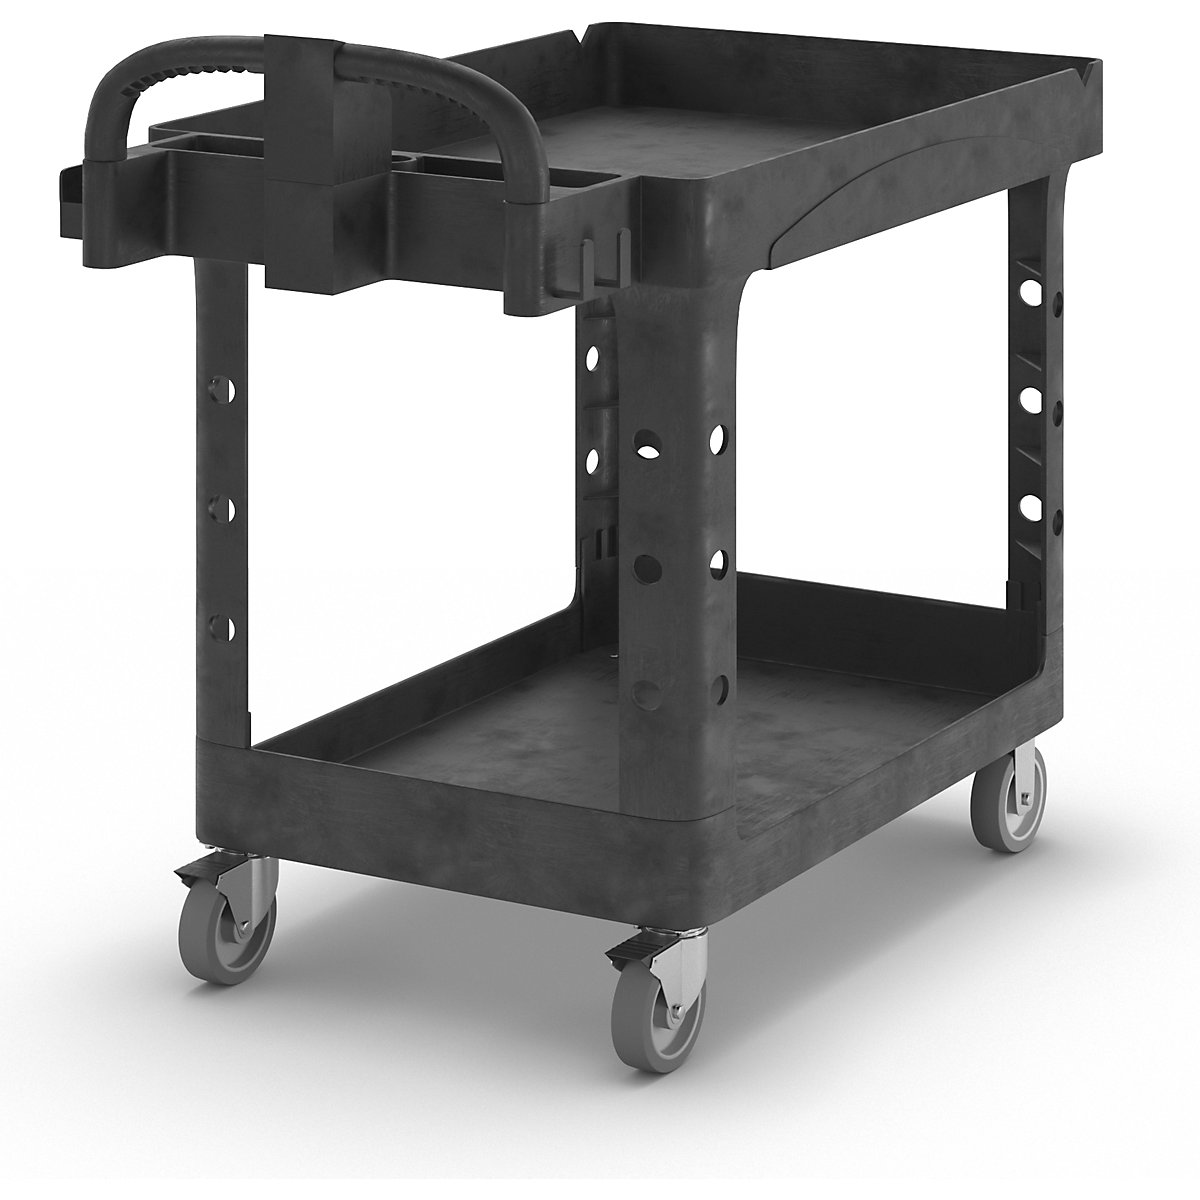 Víceúčelový stolový vozík z plastu – Rubbermaid, s prohloubením, d x š x v 1120 x 640 x 980 mm-1